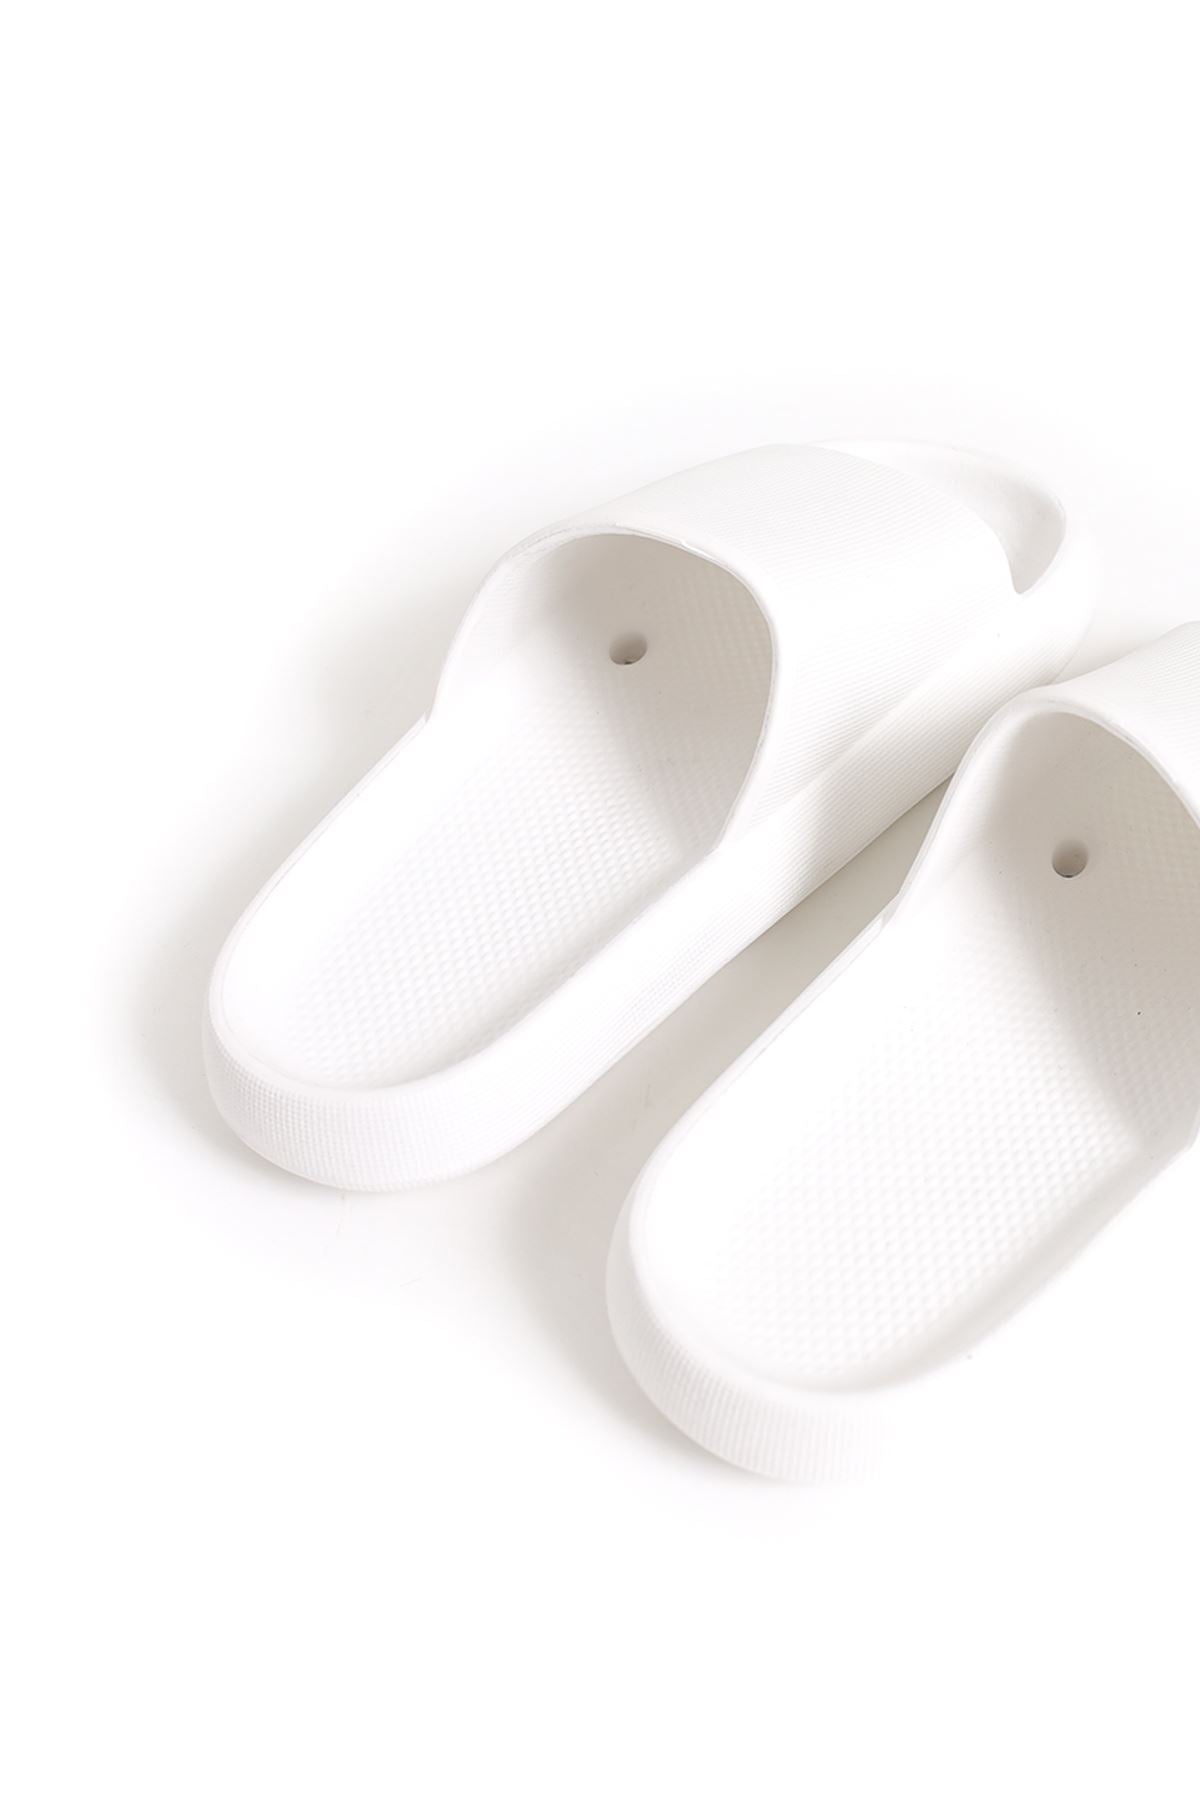 STM Design Cool Men's Slippers WHITE - STREETMODE ™